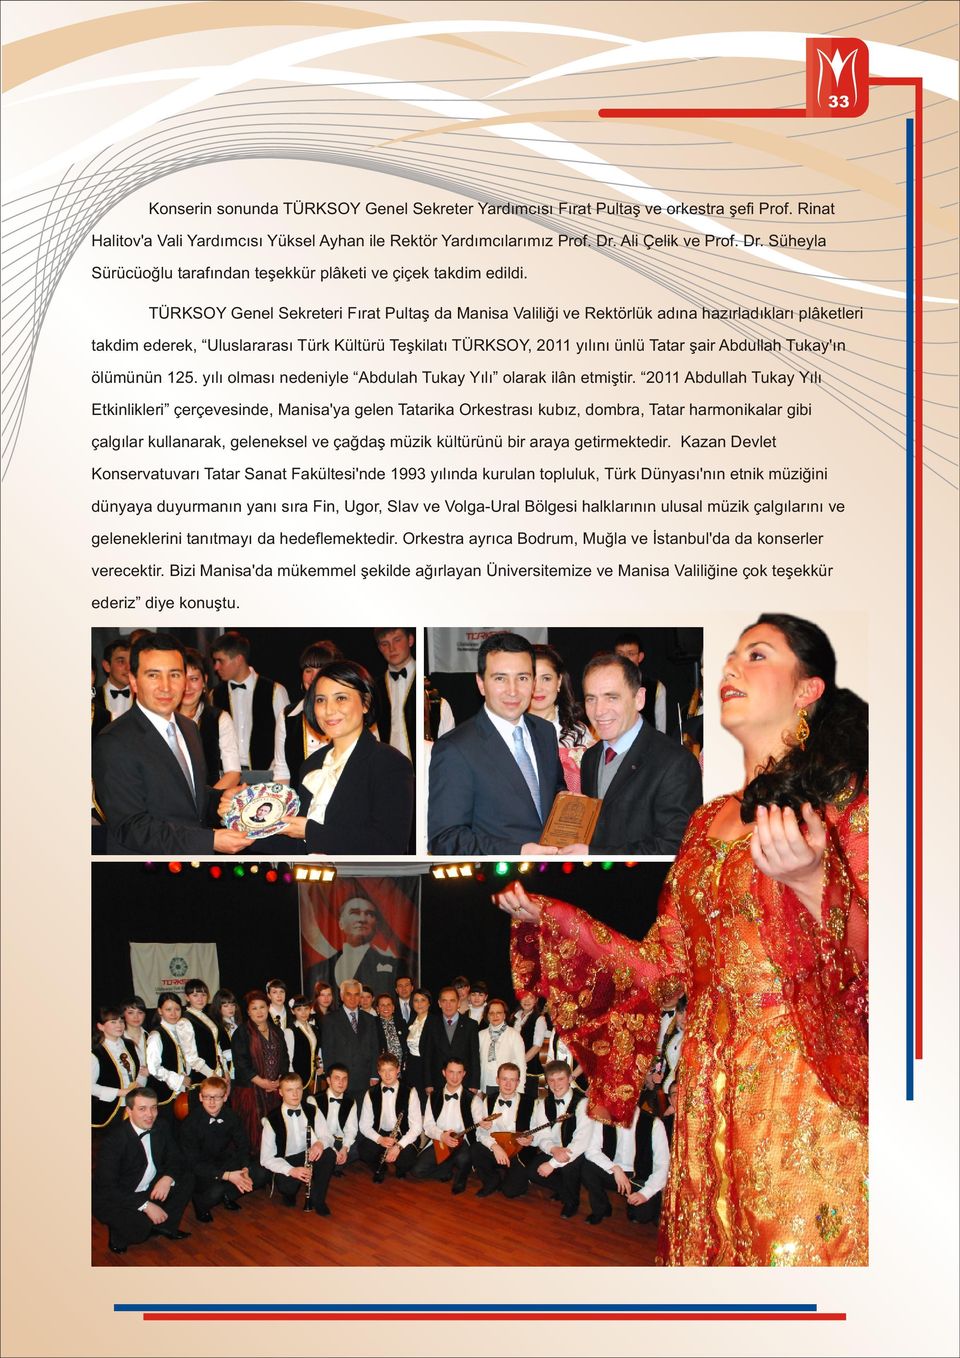 TÜRKSOY Genel Sekreteri Fırat Pultaş da Manisa Valiliği ve Rektörlük adına hazırladıkları plâketleri takdim ederek, Uluslararası Türk Kültürü Teşkilatı TÜRKSOY, 2011 yılını ünlü Tatar şair Abdullah